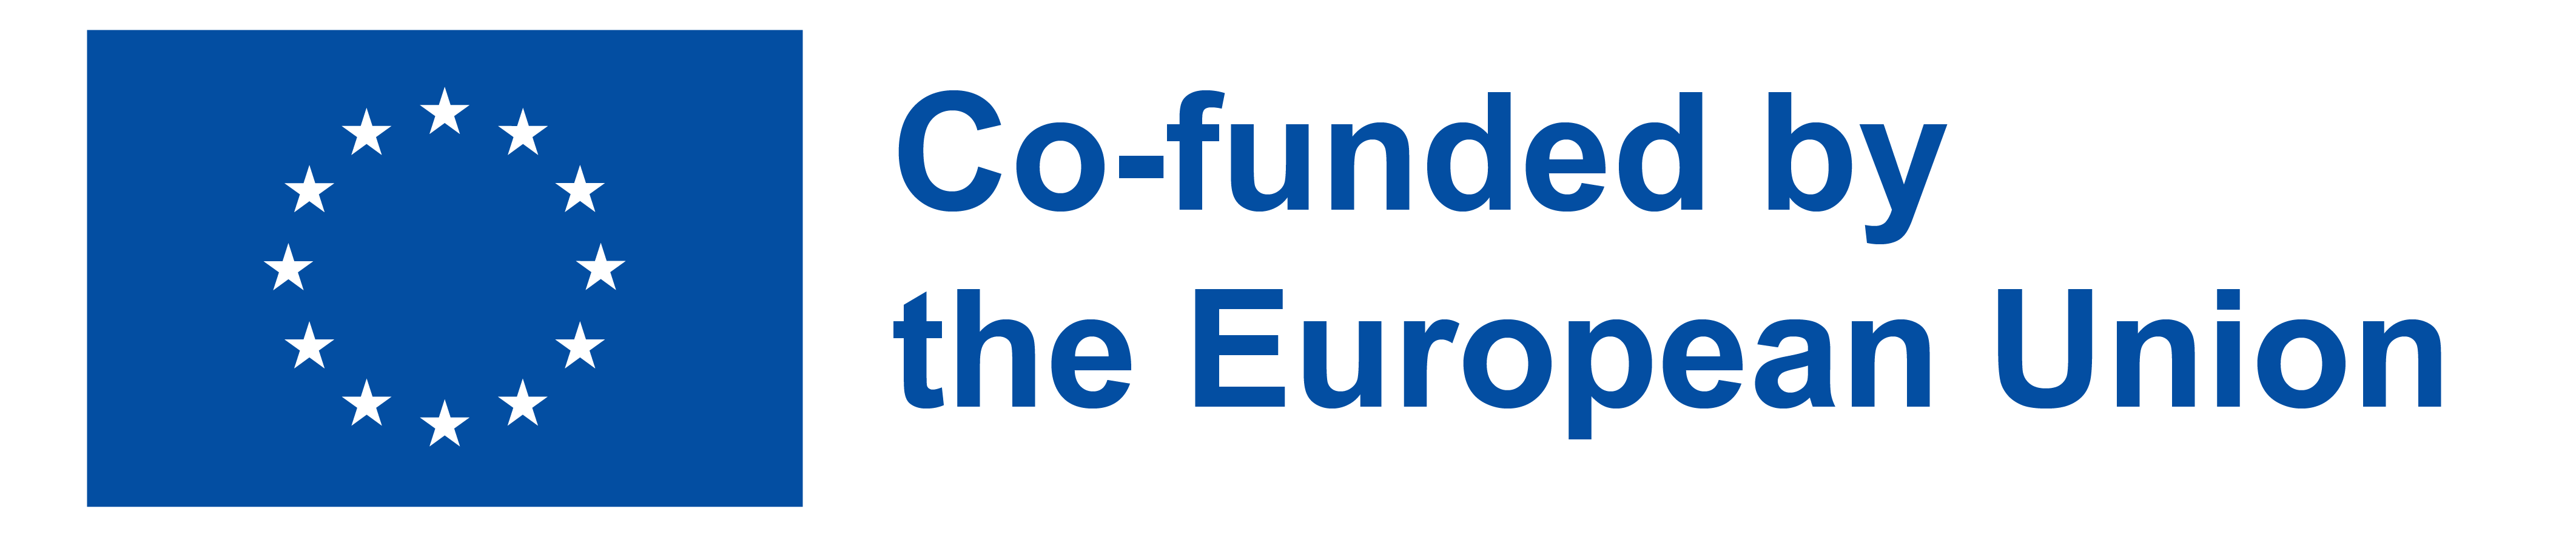 EU funding